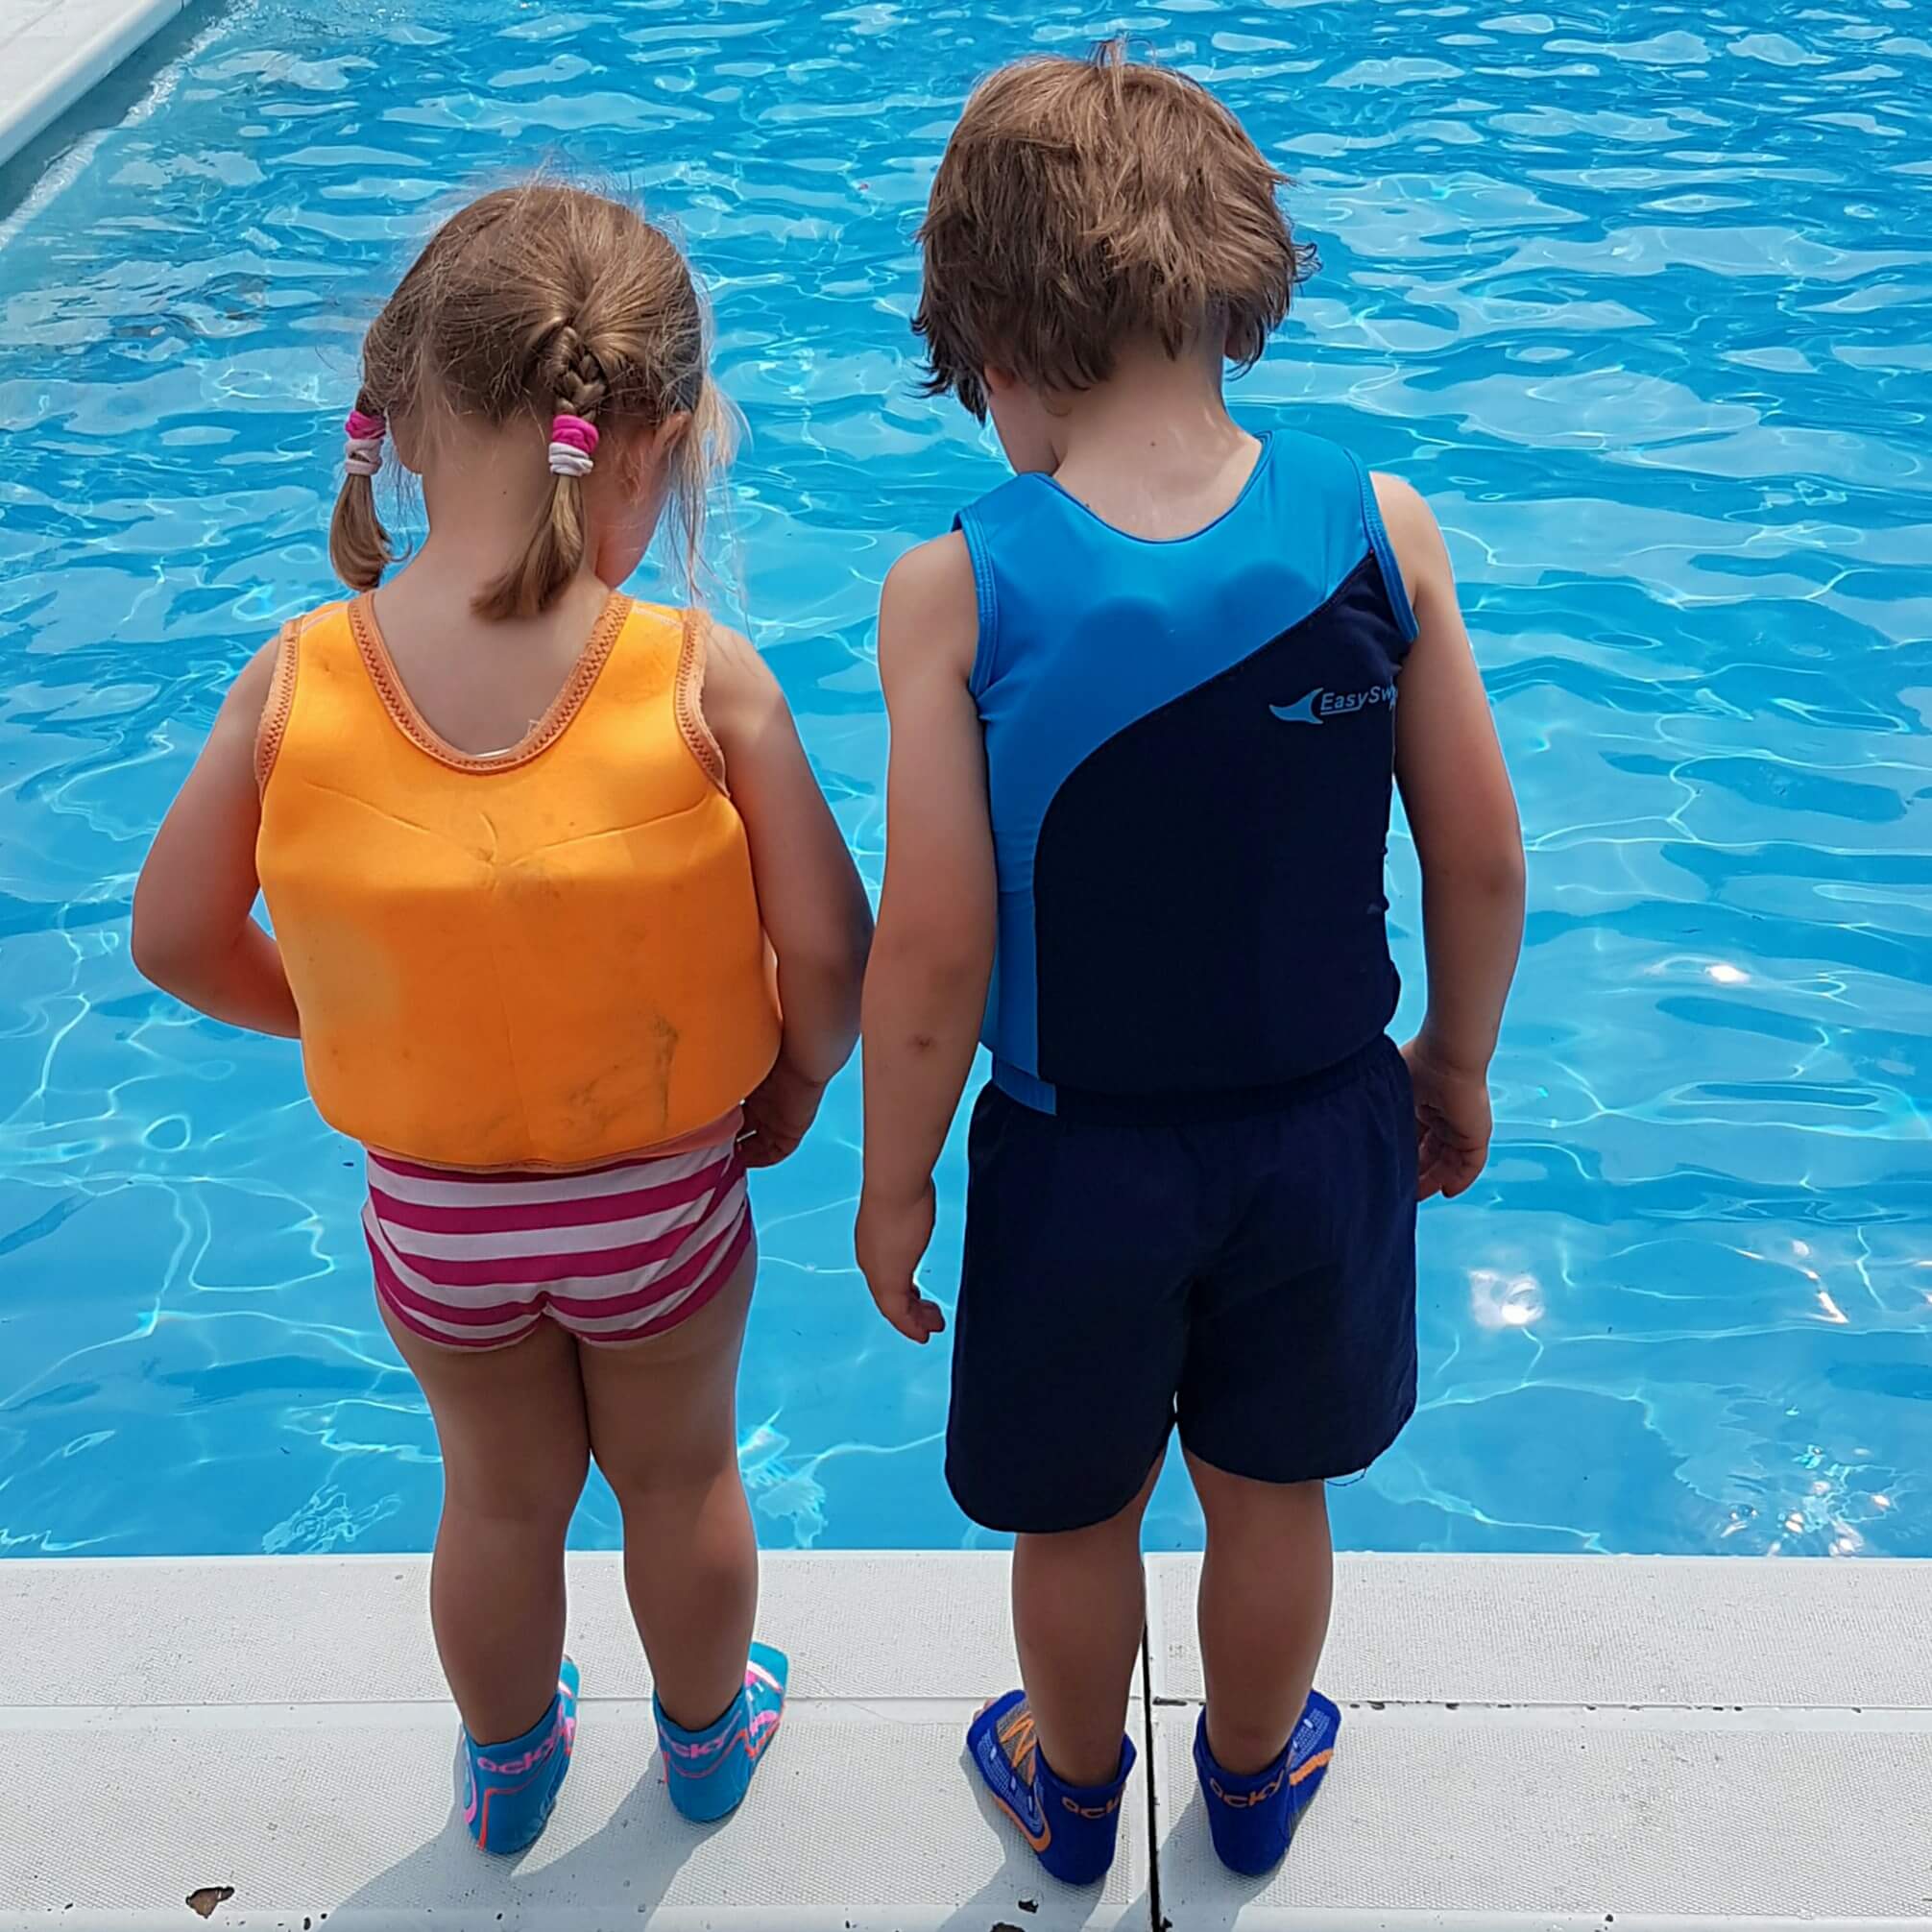 Getest: Sweakers antislip sokken voor in het zwembad review